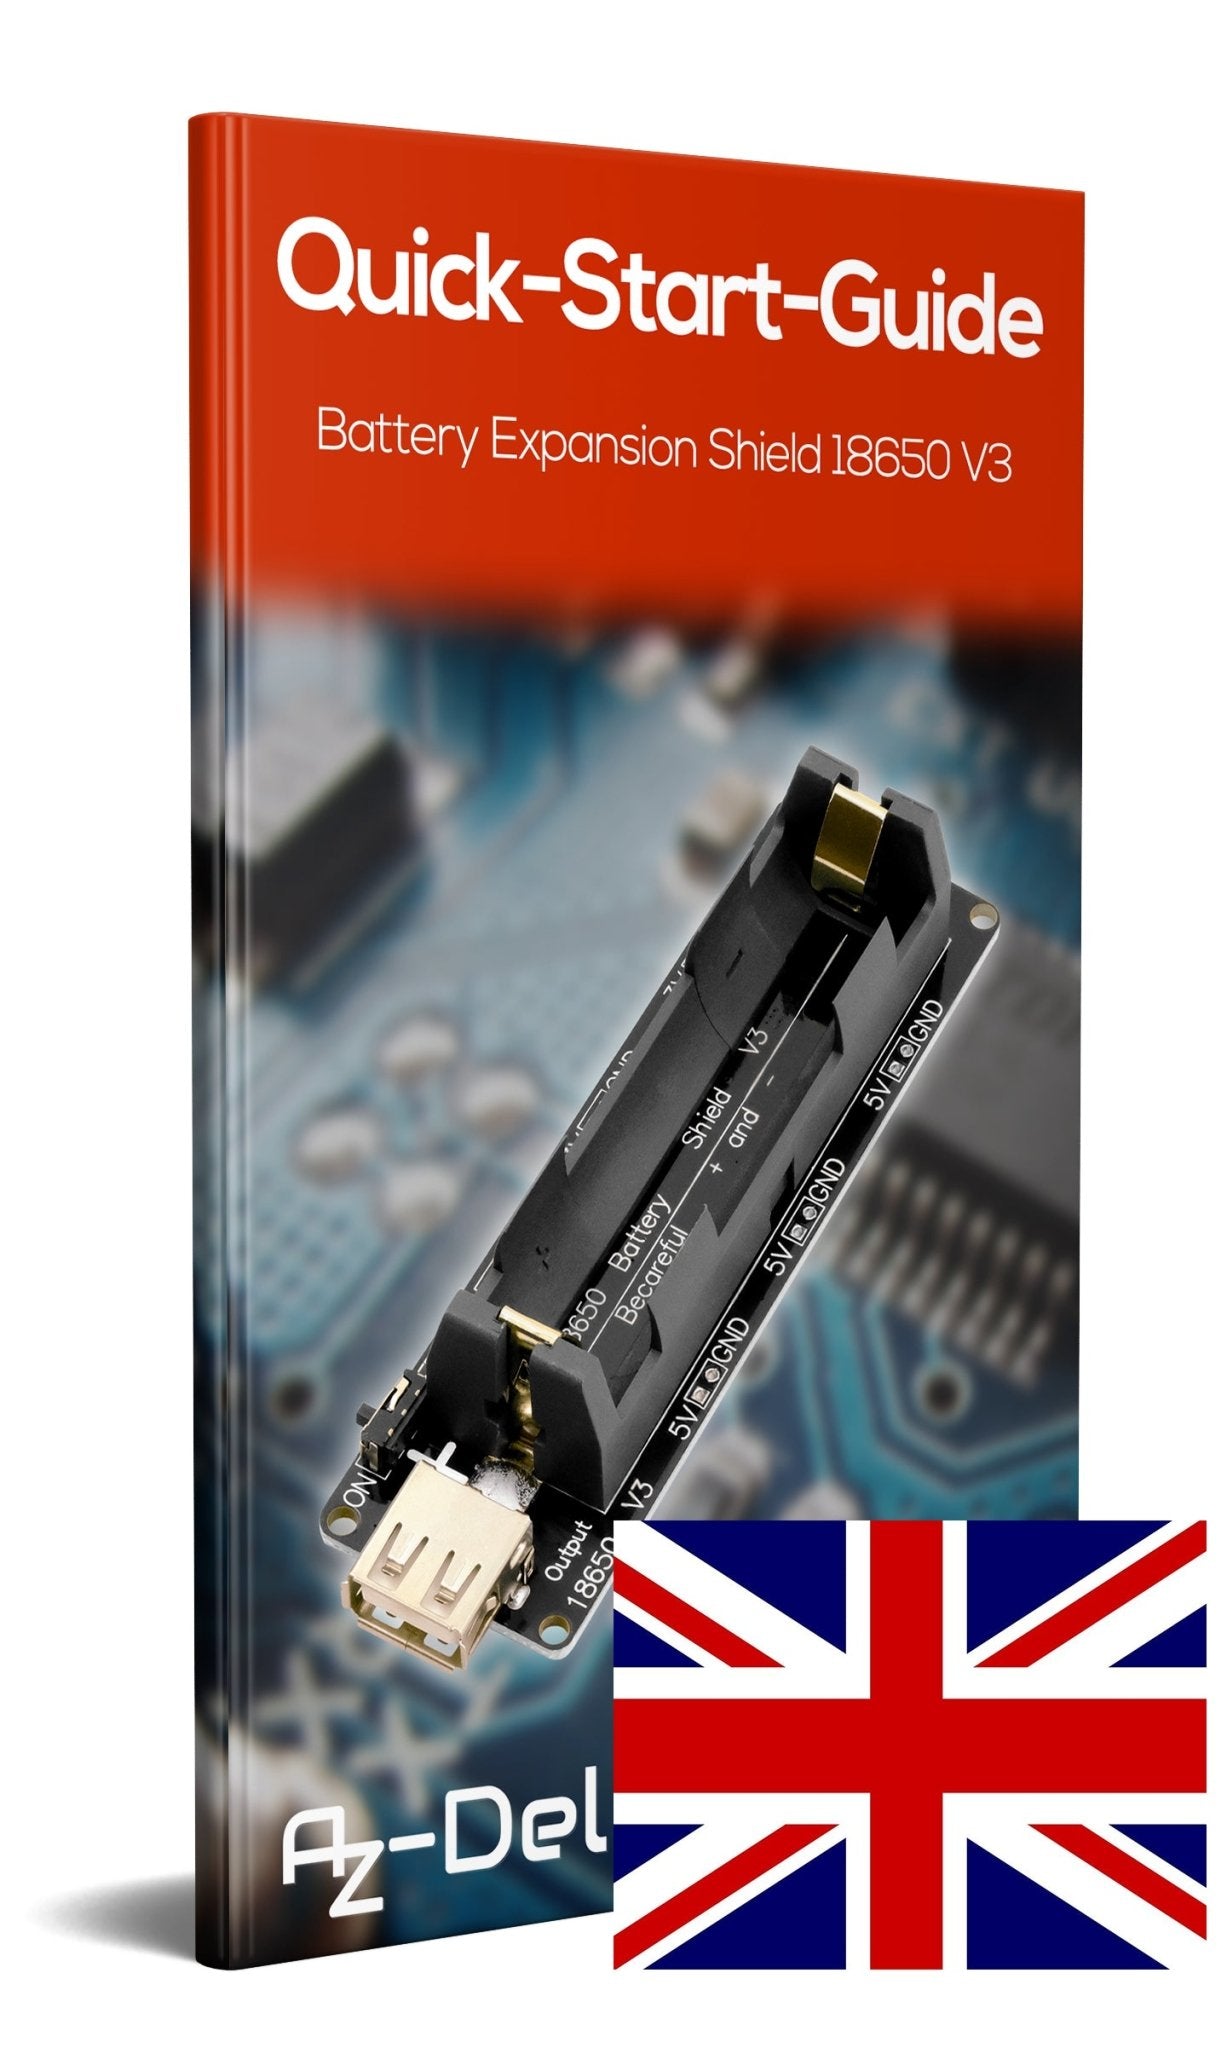 Battery Expansion Shield 18650 V3 inkl. USB Kabel - AZ-Delivery